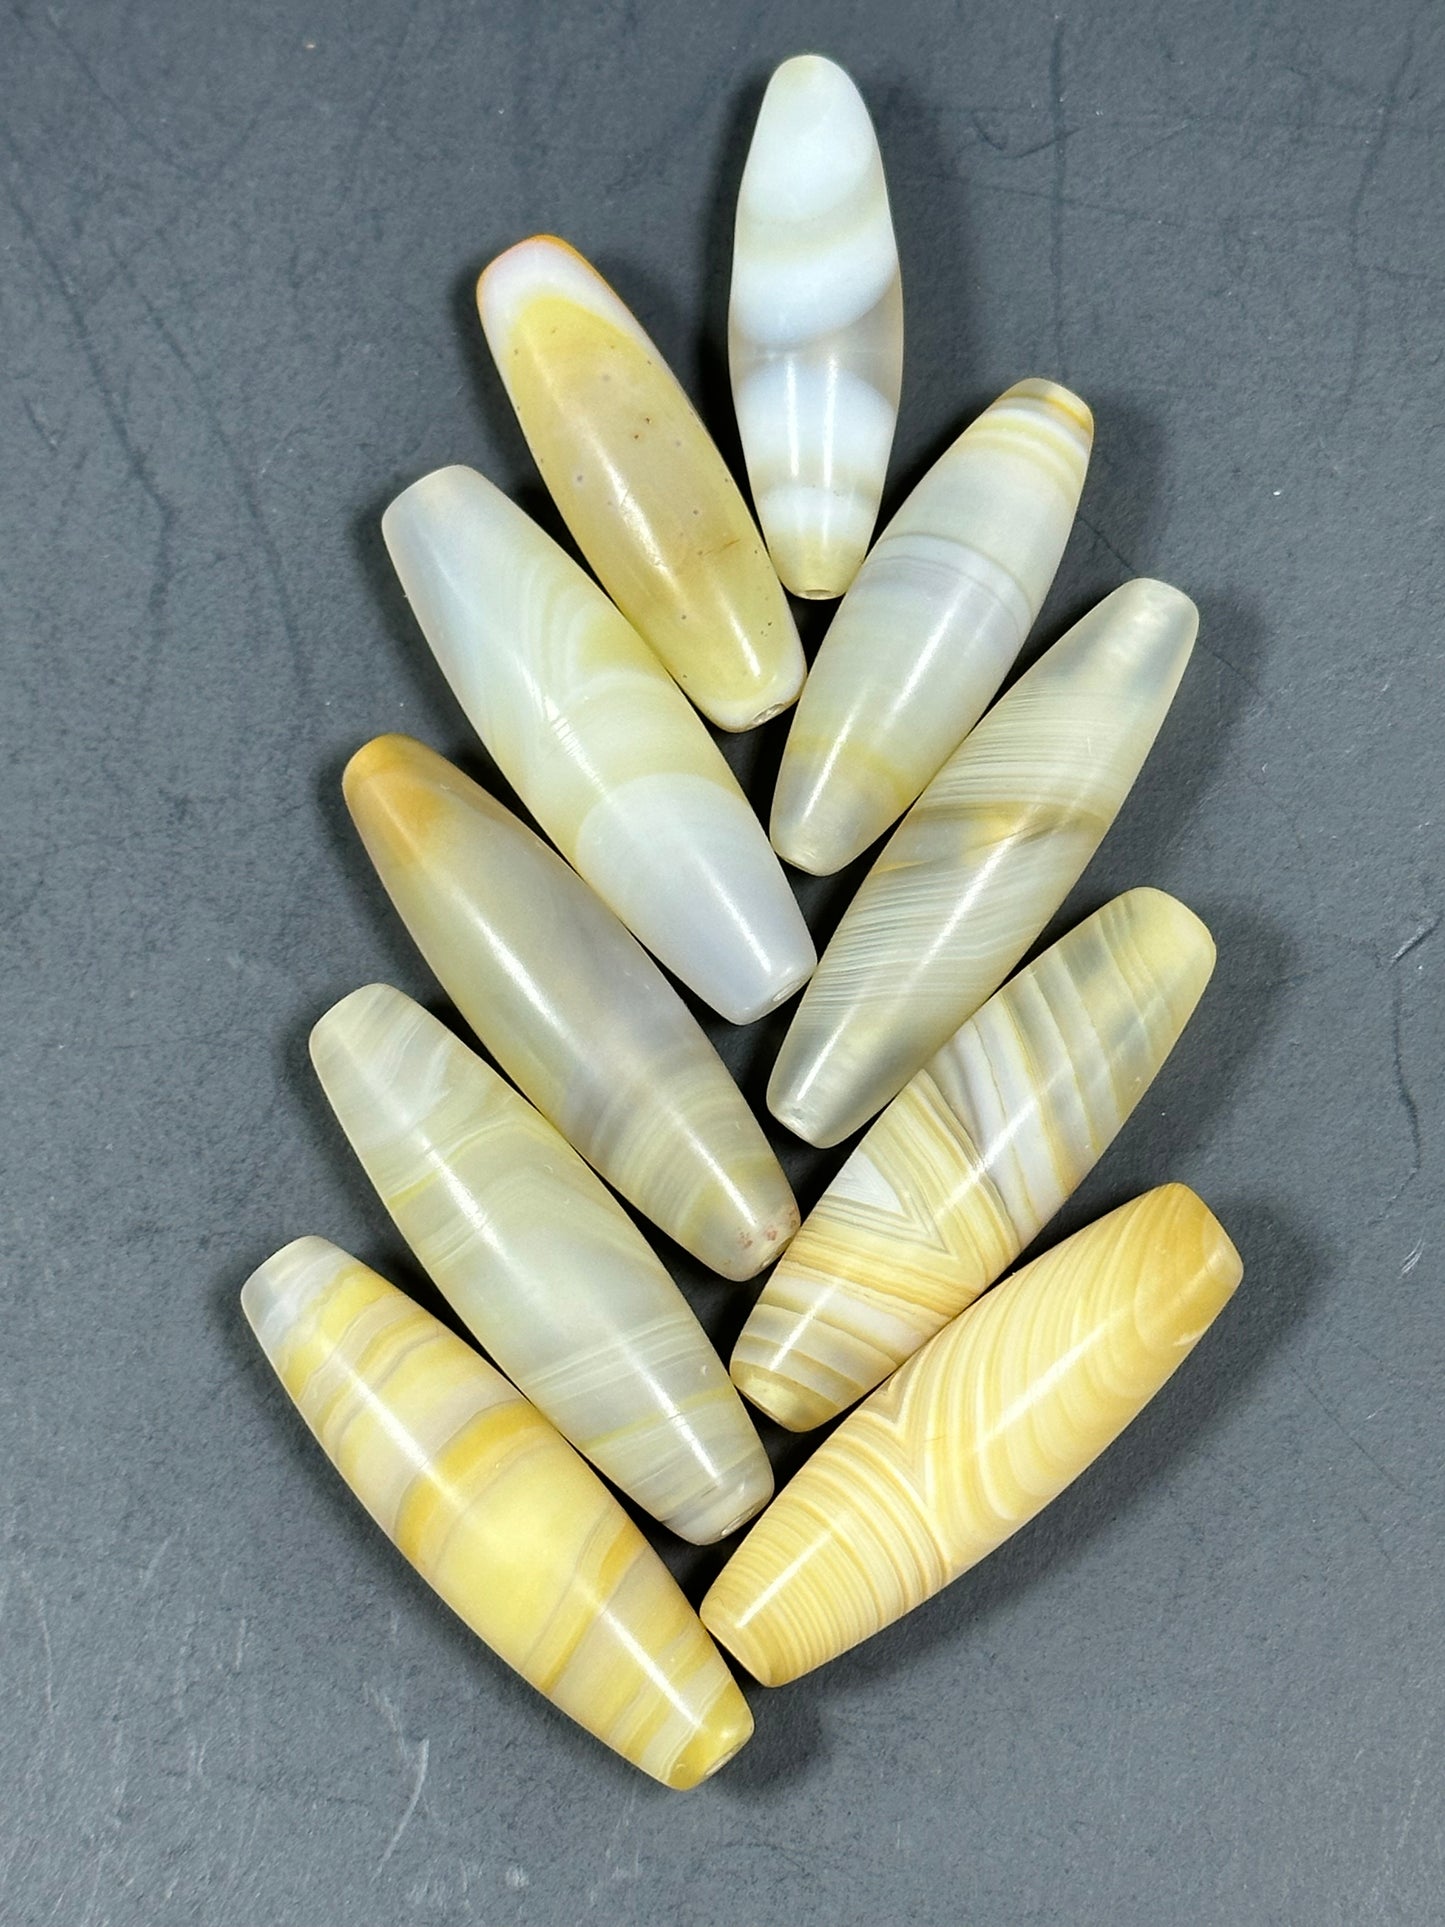 NATURAL Botswana Agate Gemstone Bead 38x12mm to 45x13mm Tube Shape Beads, Beautiful White Yellow Color Botswana Agate Gemstone LOOSE Beads